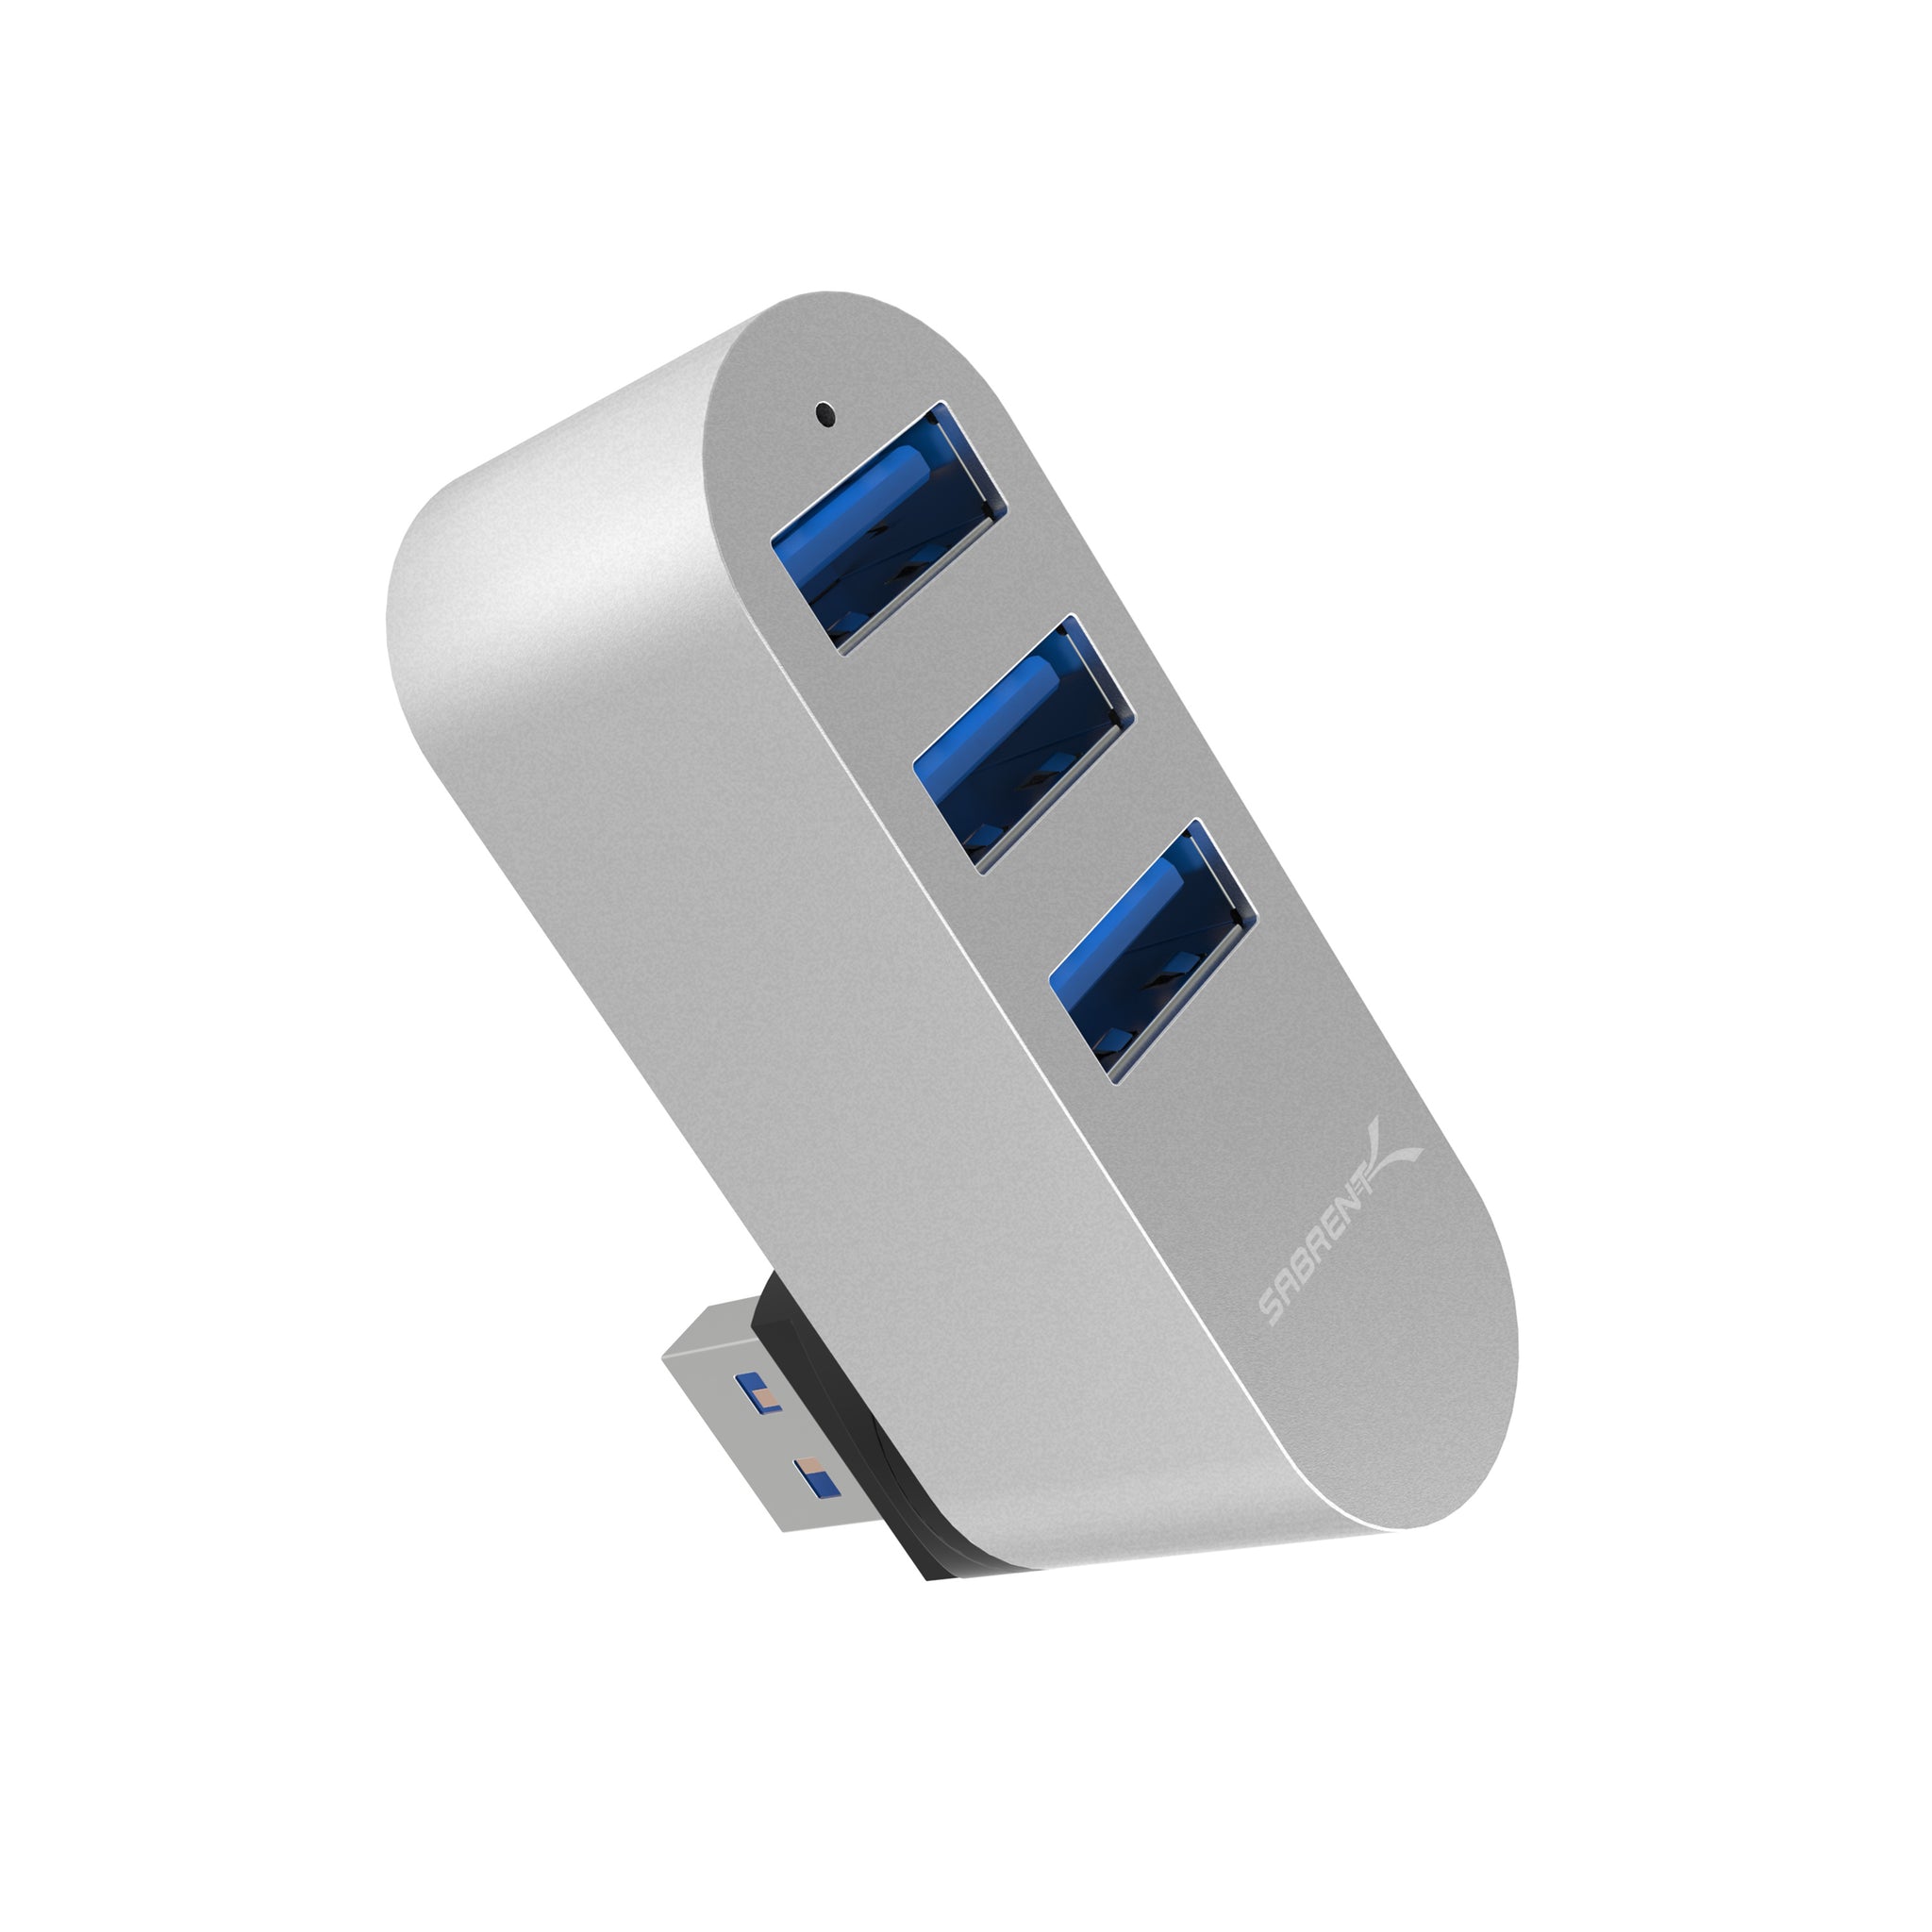 Sabrent 3-Port USB 3.0 Hub with Card Reader